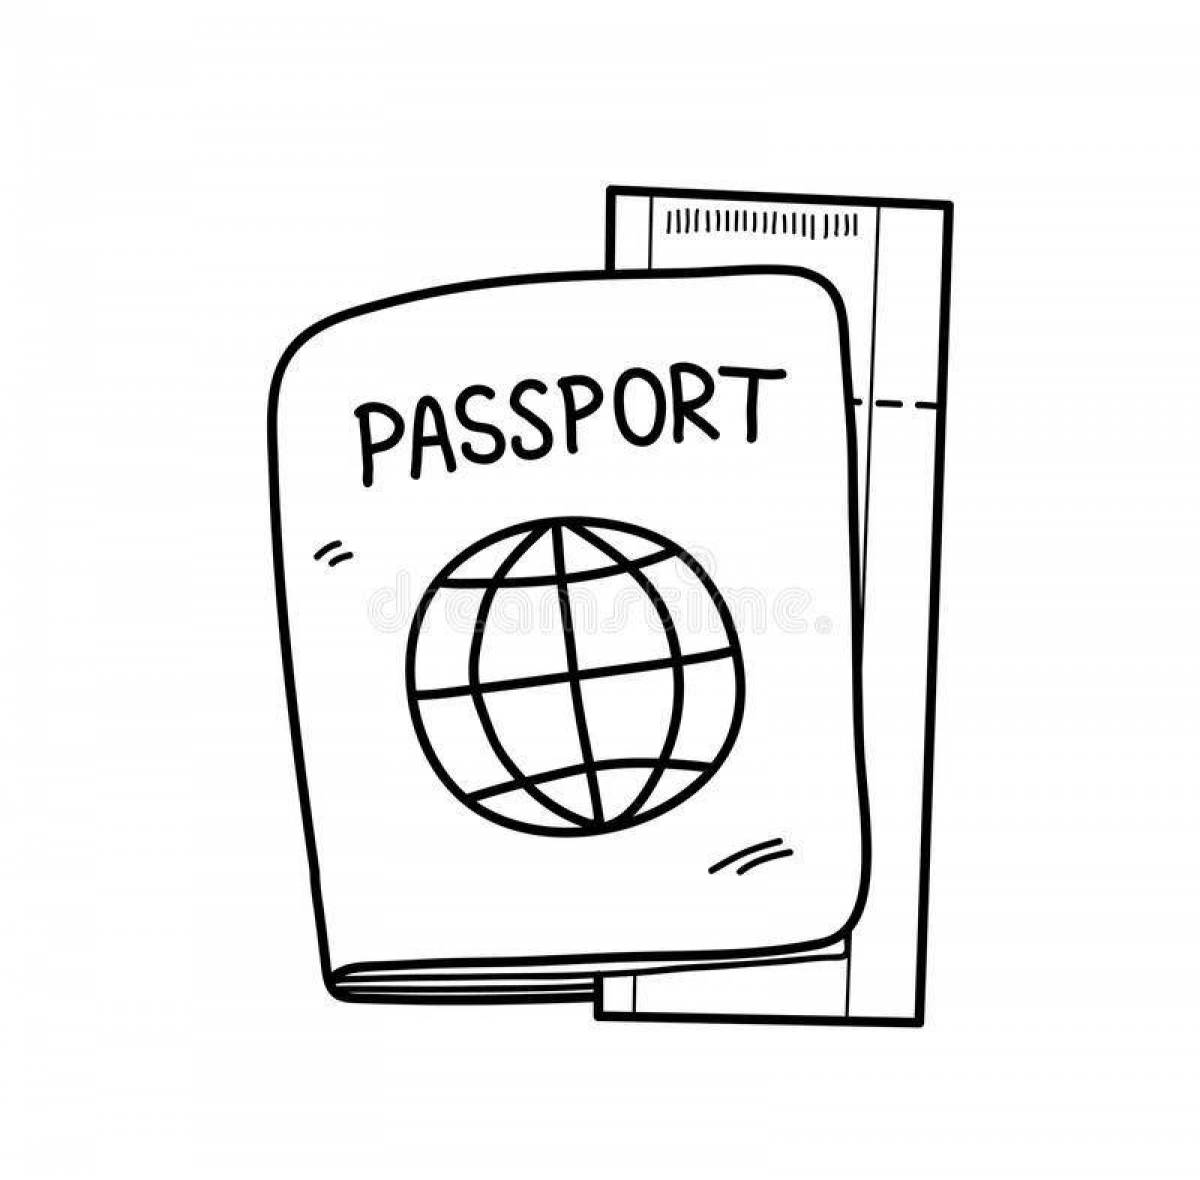 Passport рисунок